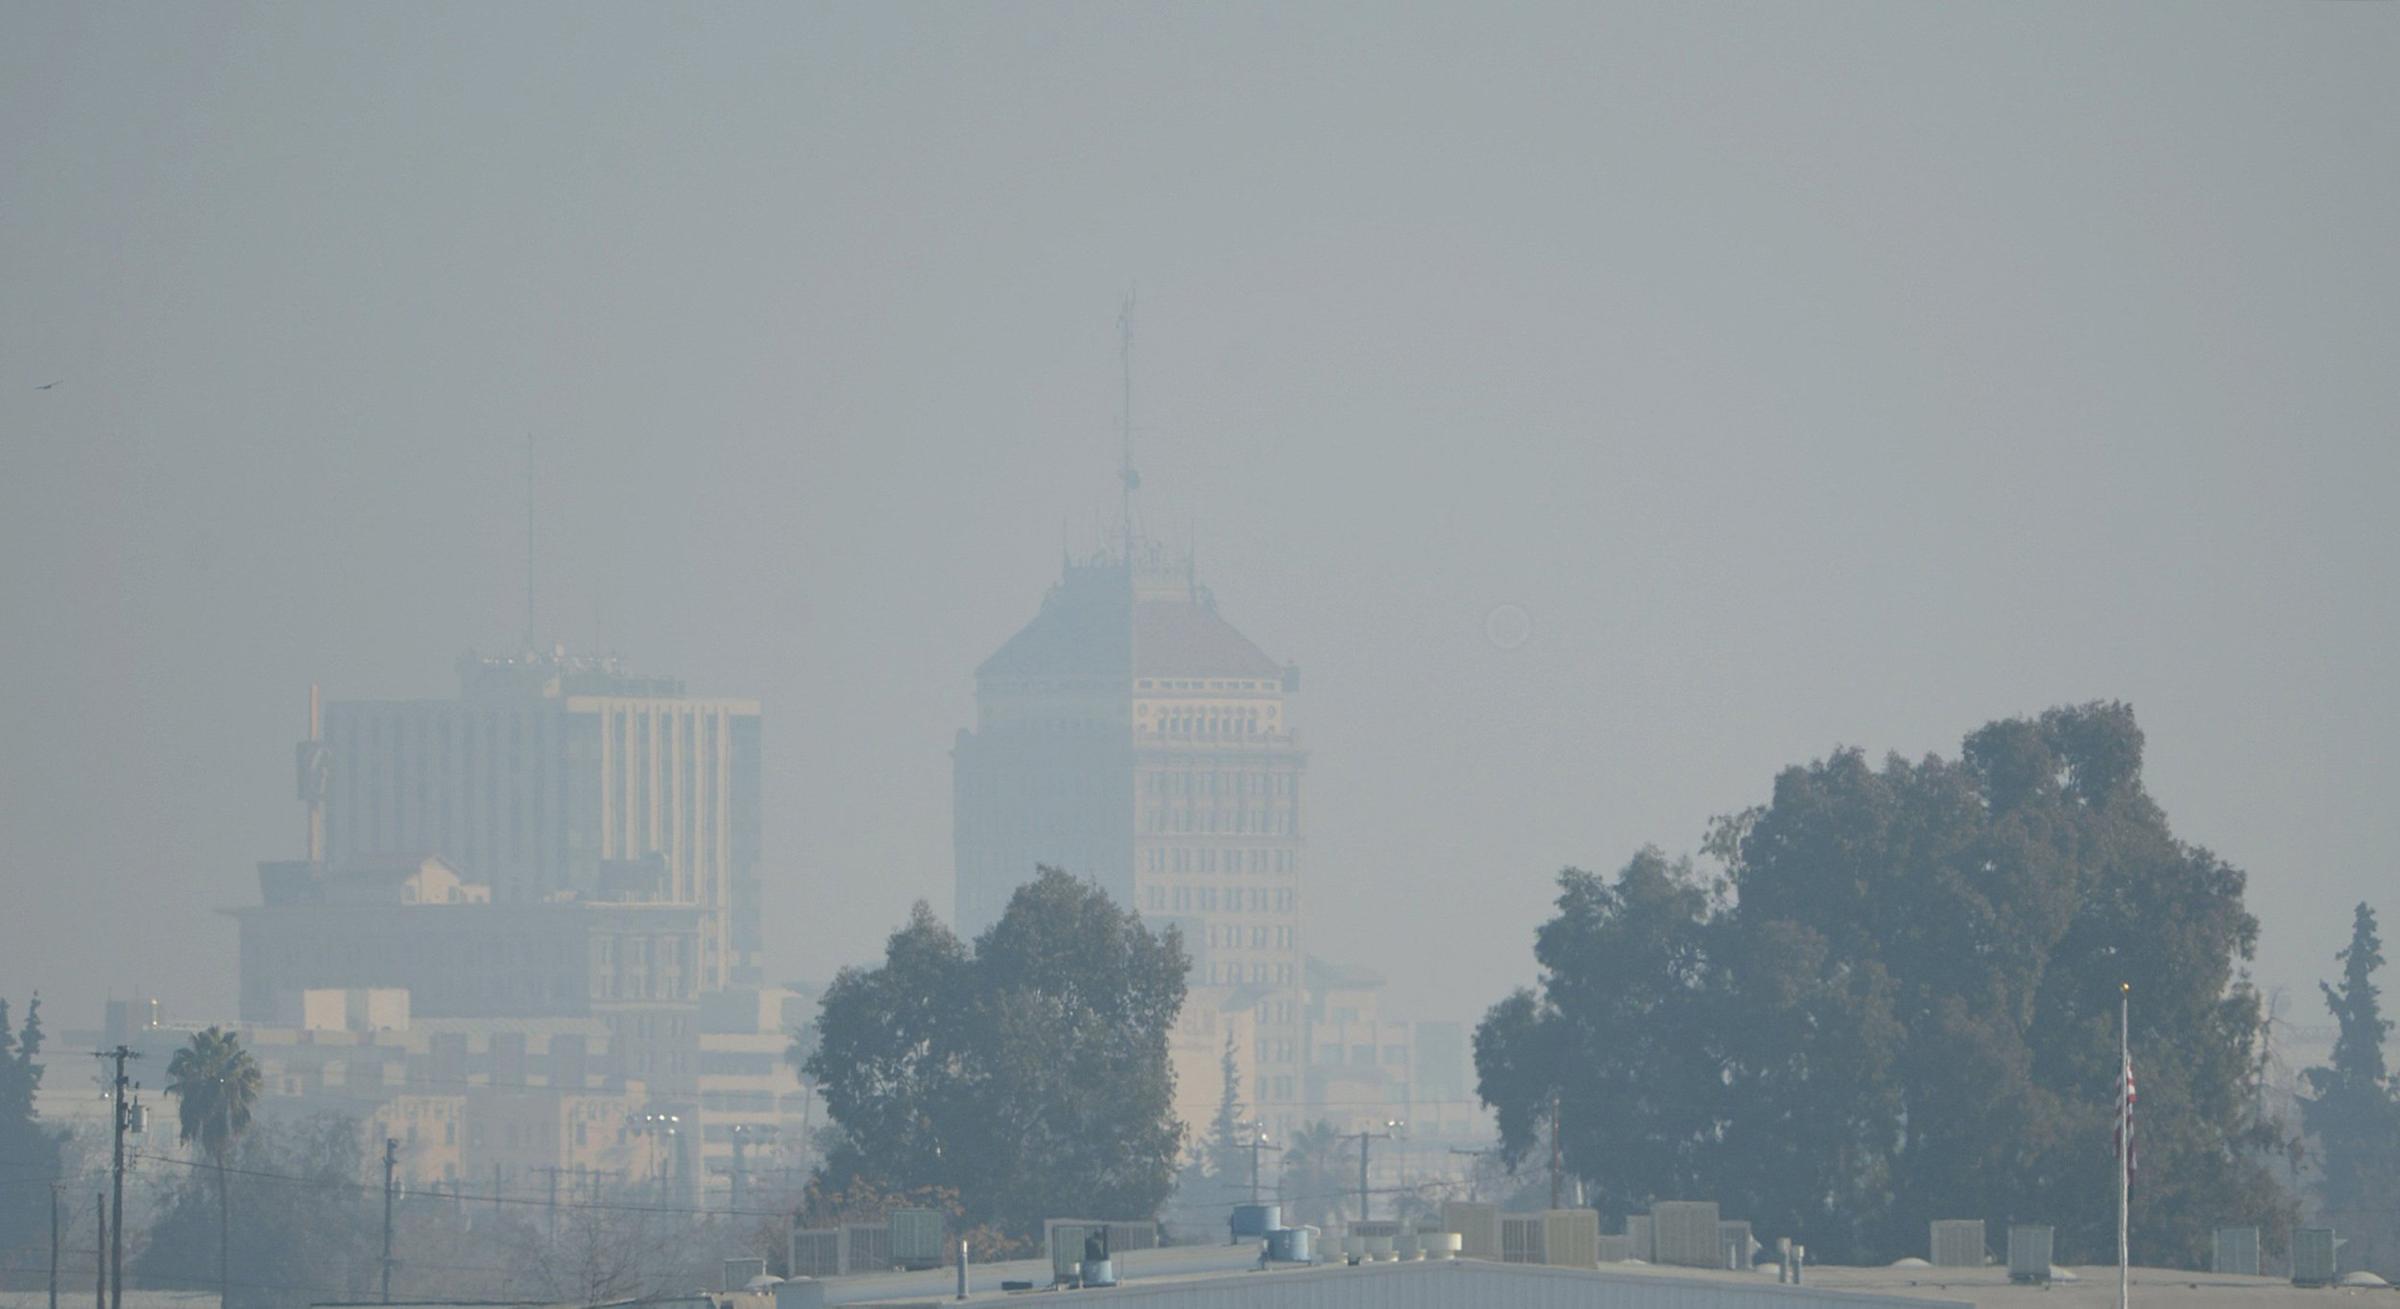 The downtown Fresno skyline with heavy haze